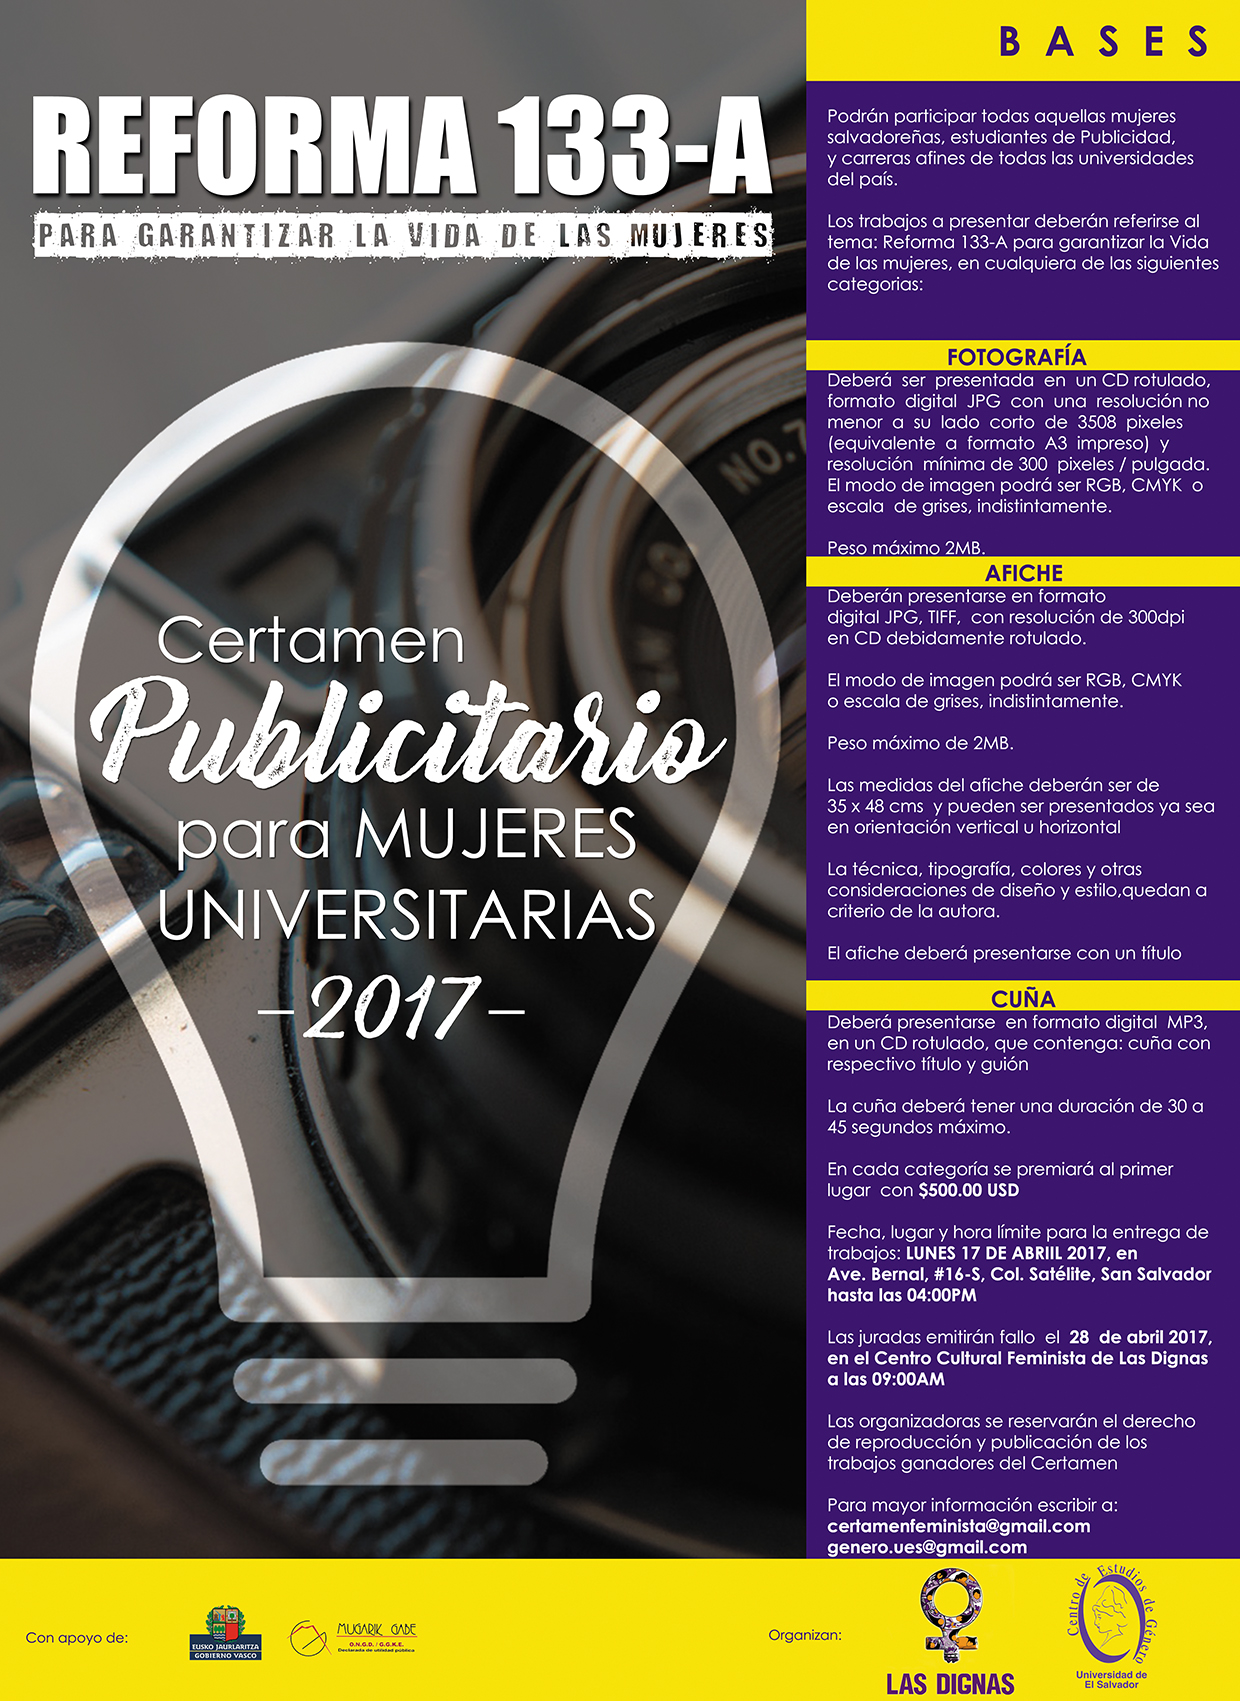 BASES DE CERTAMEN PUBLICITARIO PARA MUJERES UNIVERSITARIAS 2017: REFORMA 133-A PARA GARANTIZAR LA VIDA DE LAS MUJERES